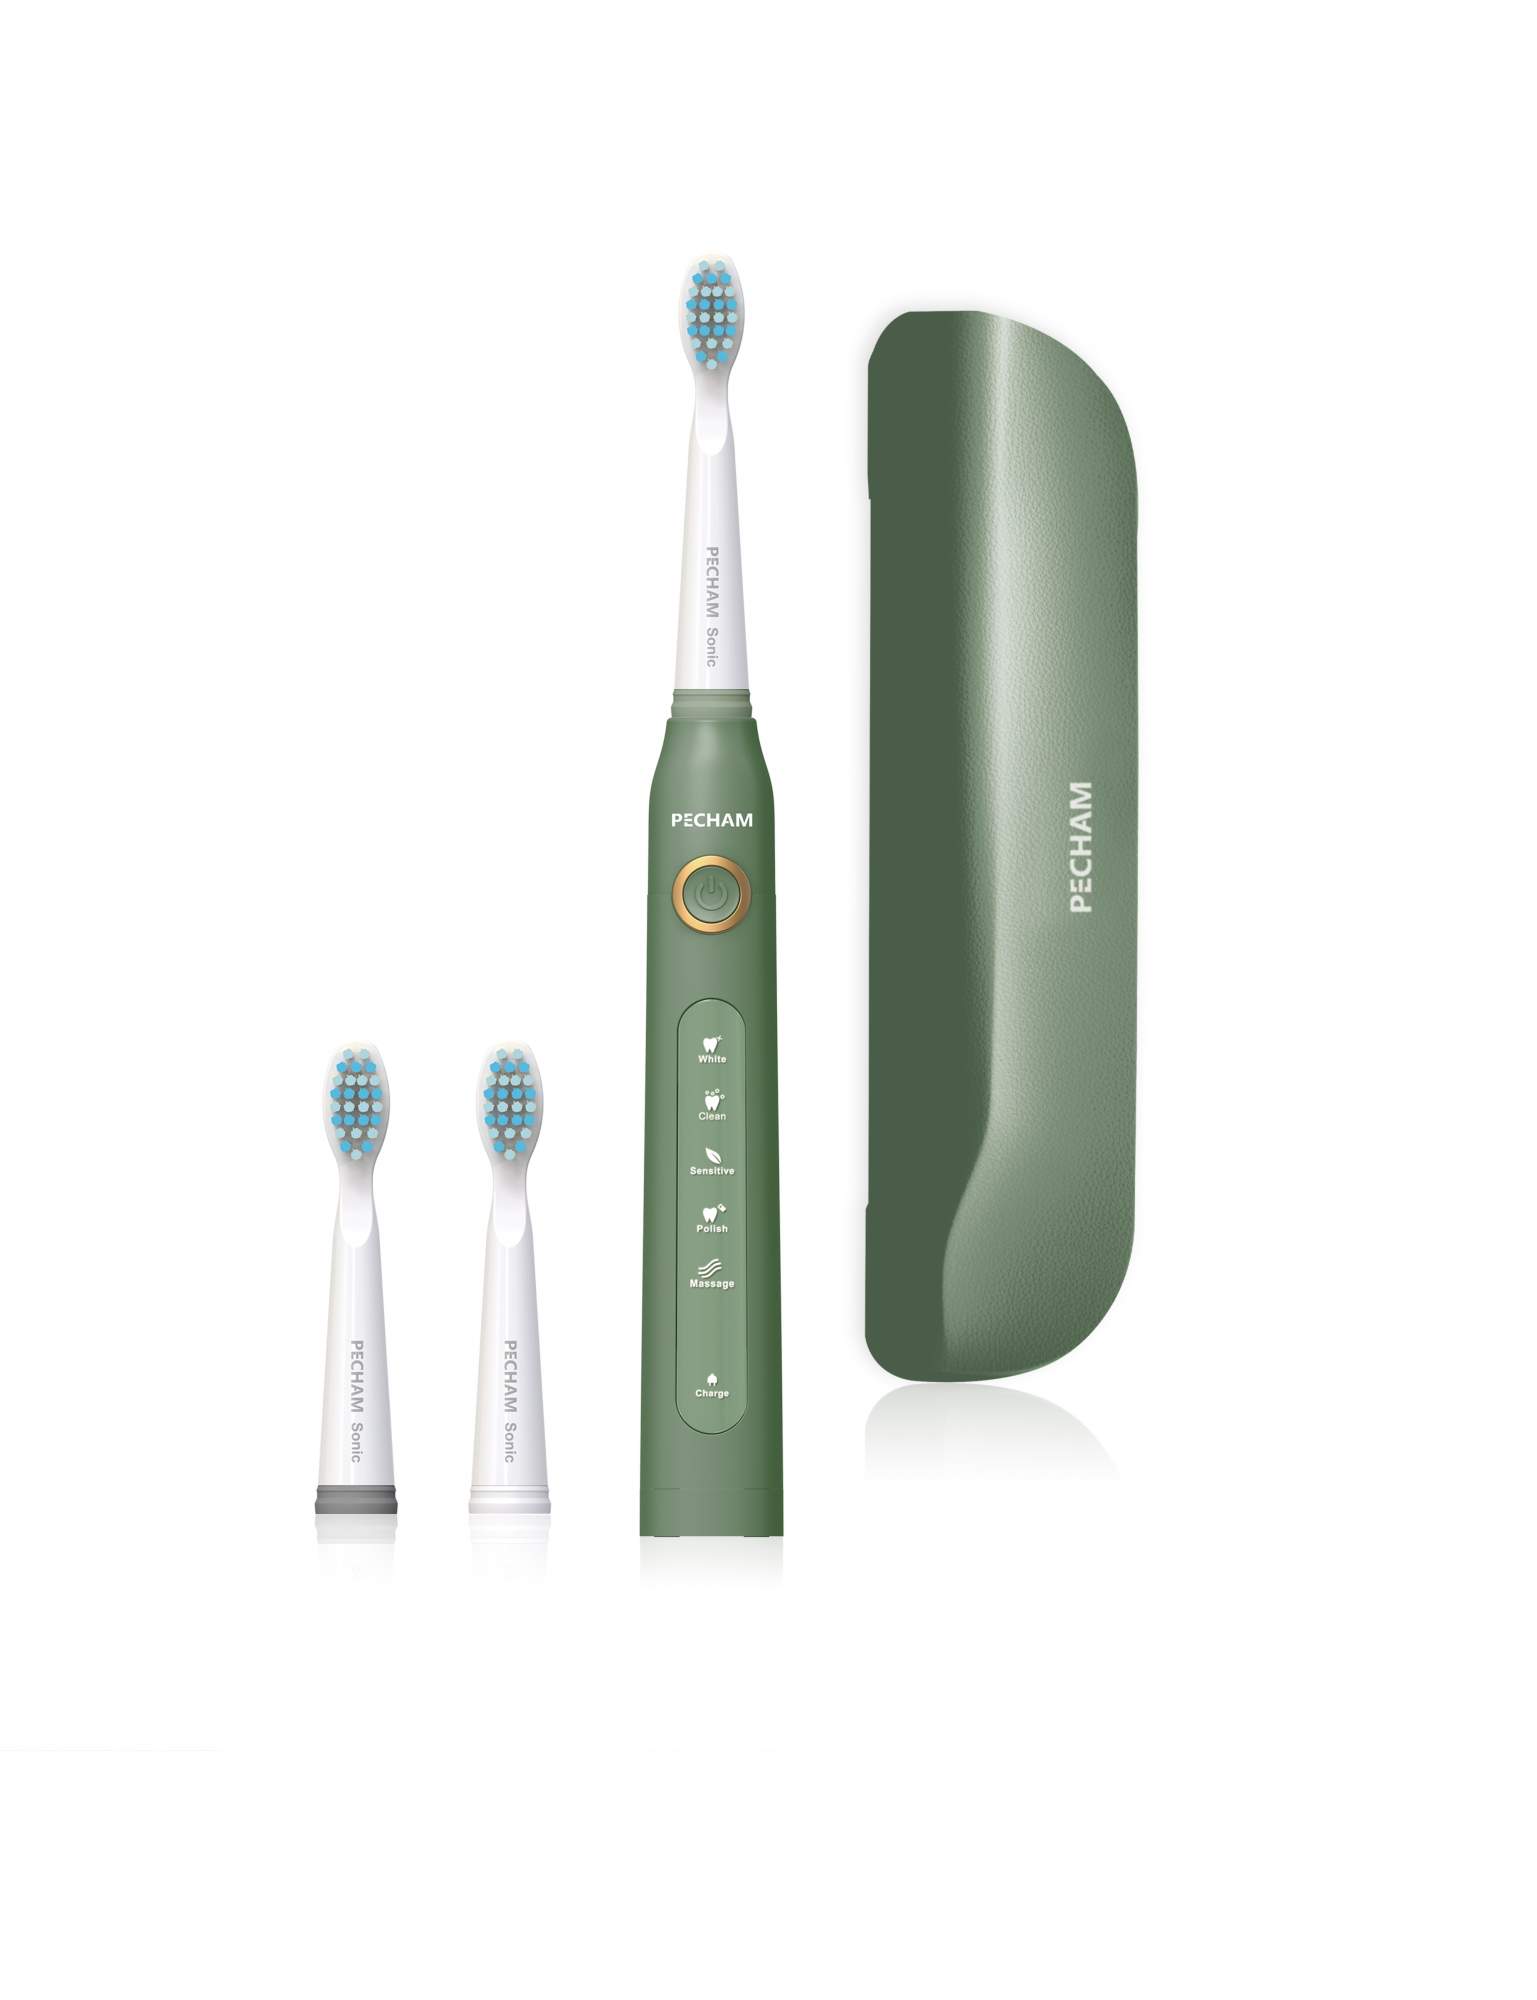 Электрическая зубная щетка PECHAM Sonic зеленый - купить в РЕСНАМ (FBS), цена на Мегамаркет